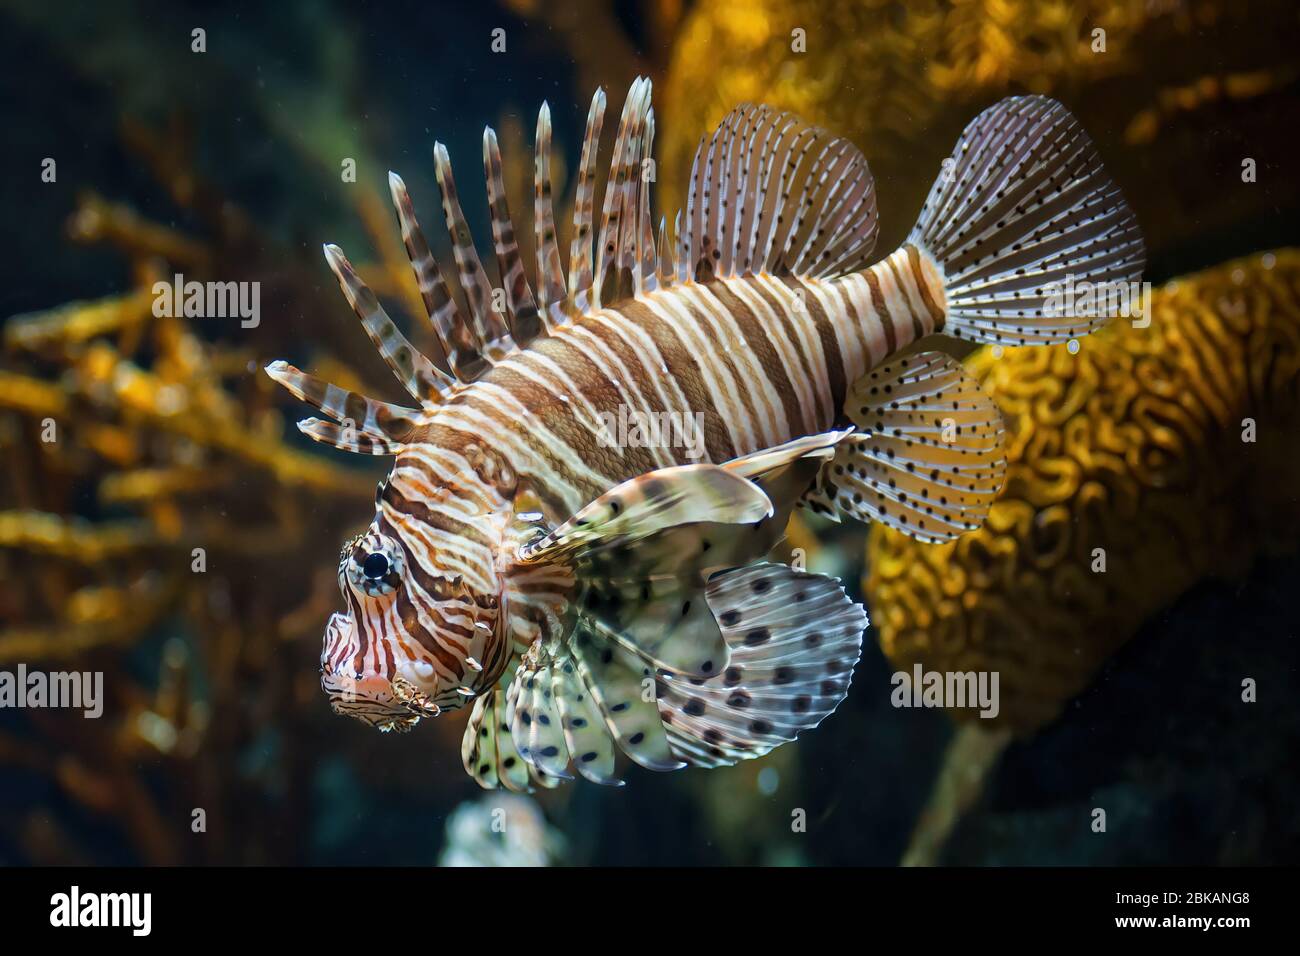 Rotfeuerfisch (Pterois volitans) giftige Korallenrifffische, Familie Scorpaenidae, beheimatet in der indopazifischen Region. Stockfoto